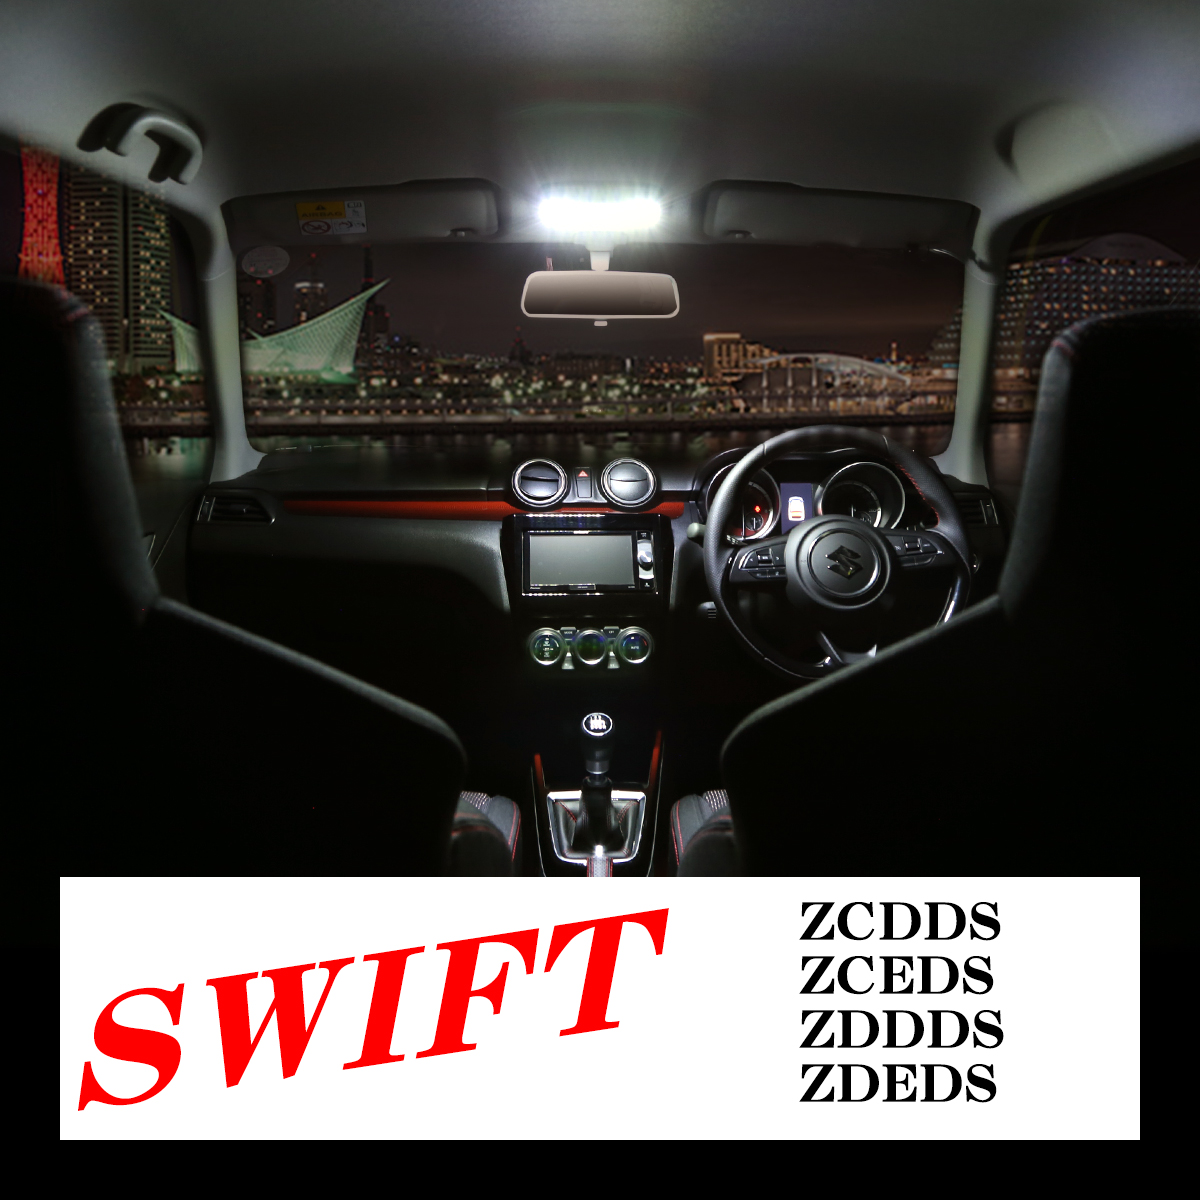 爆光 DS型 スイフト ルームランプ LED ホワイト ZCDDS ZCEDS ZDDDS ZDEDS 車種専用設計 RZ439｜tech｜08